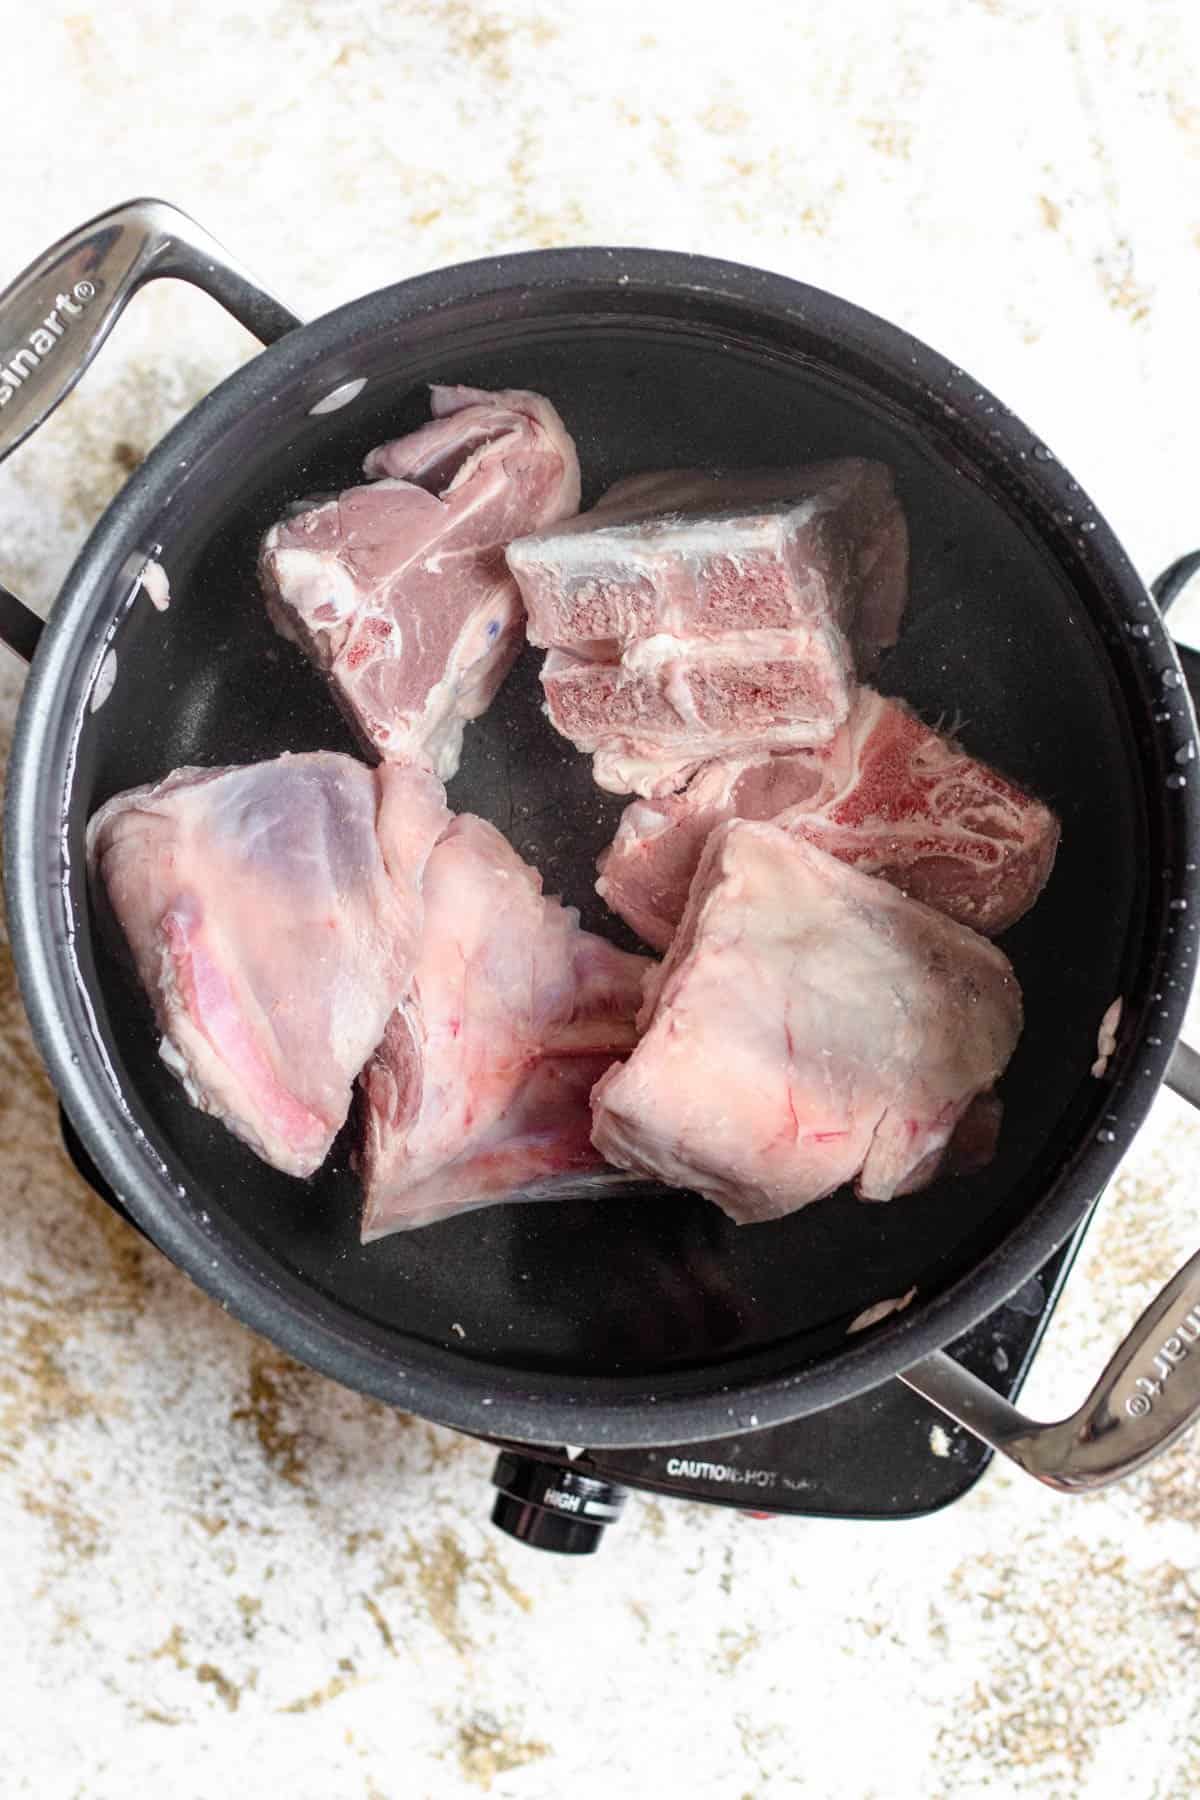 Cleaned lamb in a saucepan. 